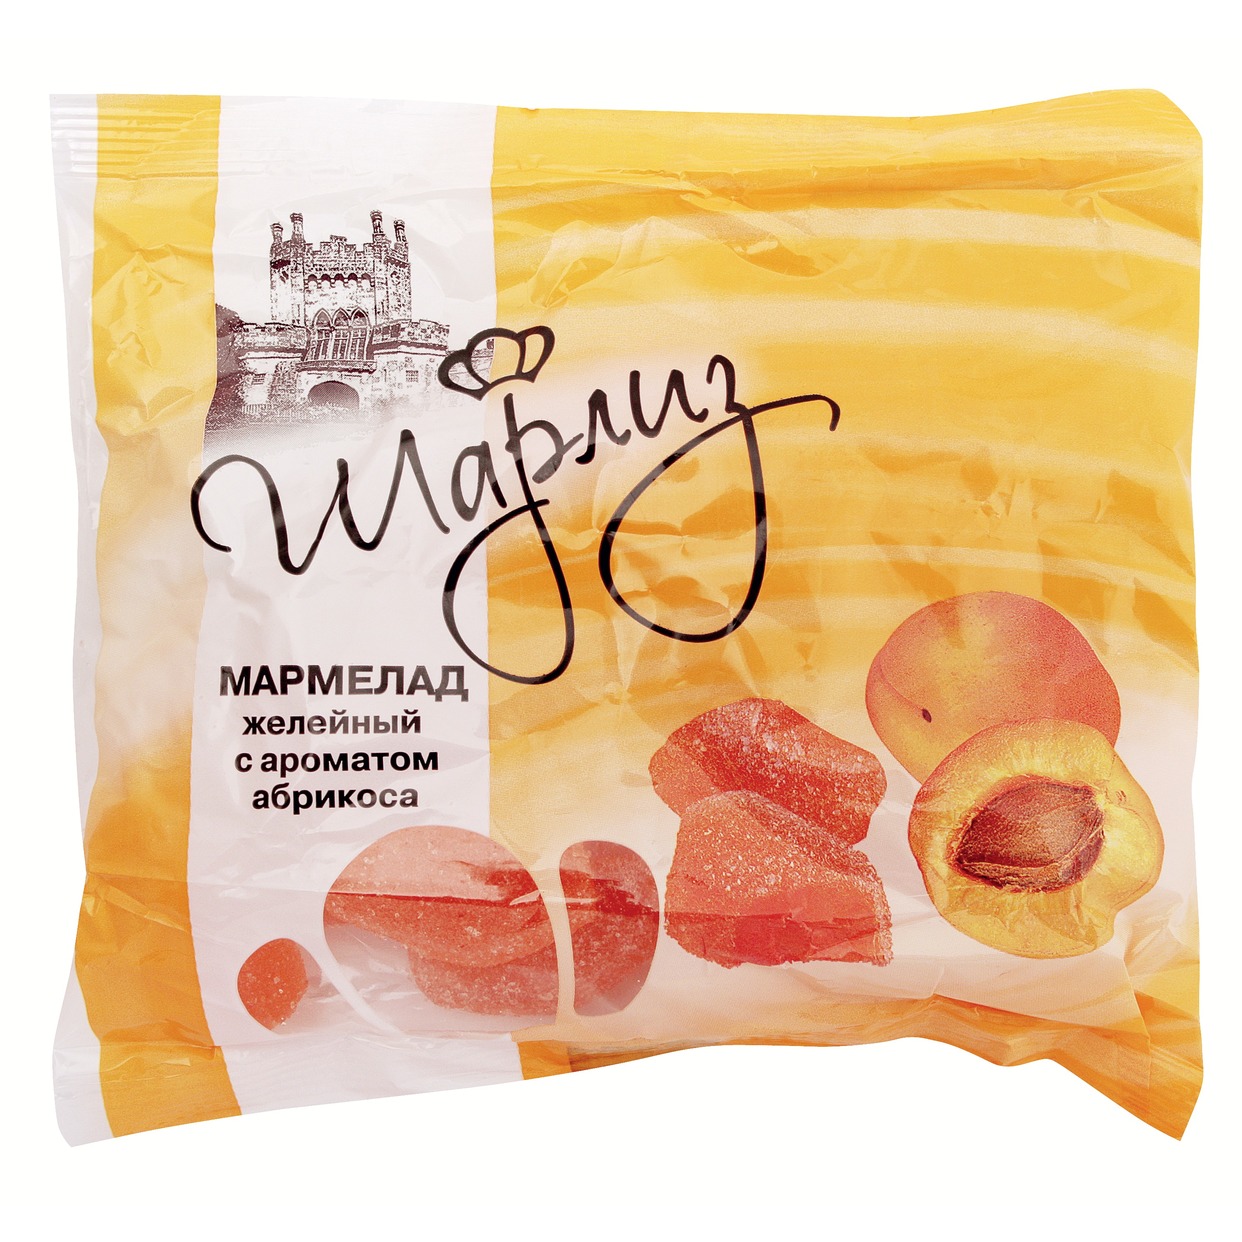 Мармелад Шарлиз желейный со вкусом абрикоса 300 г по акции в Пятерочке